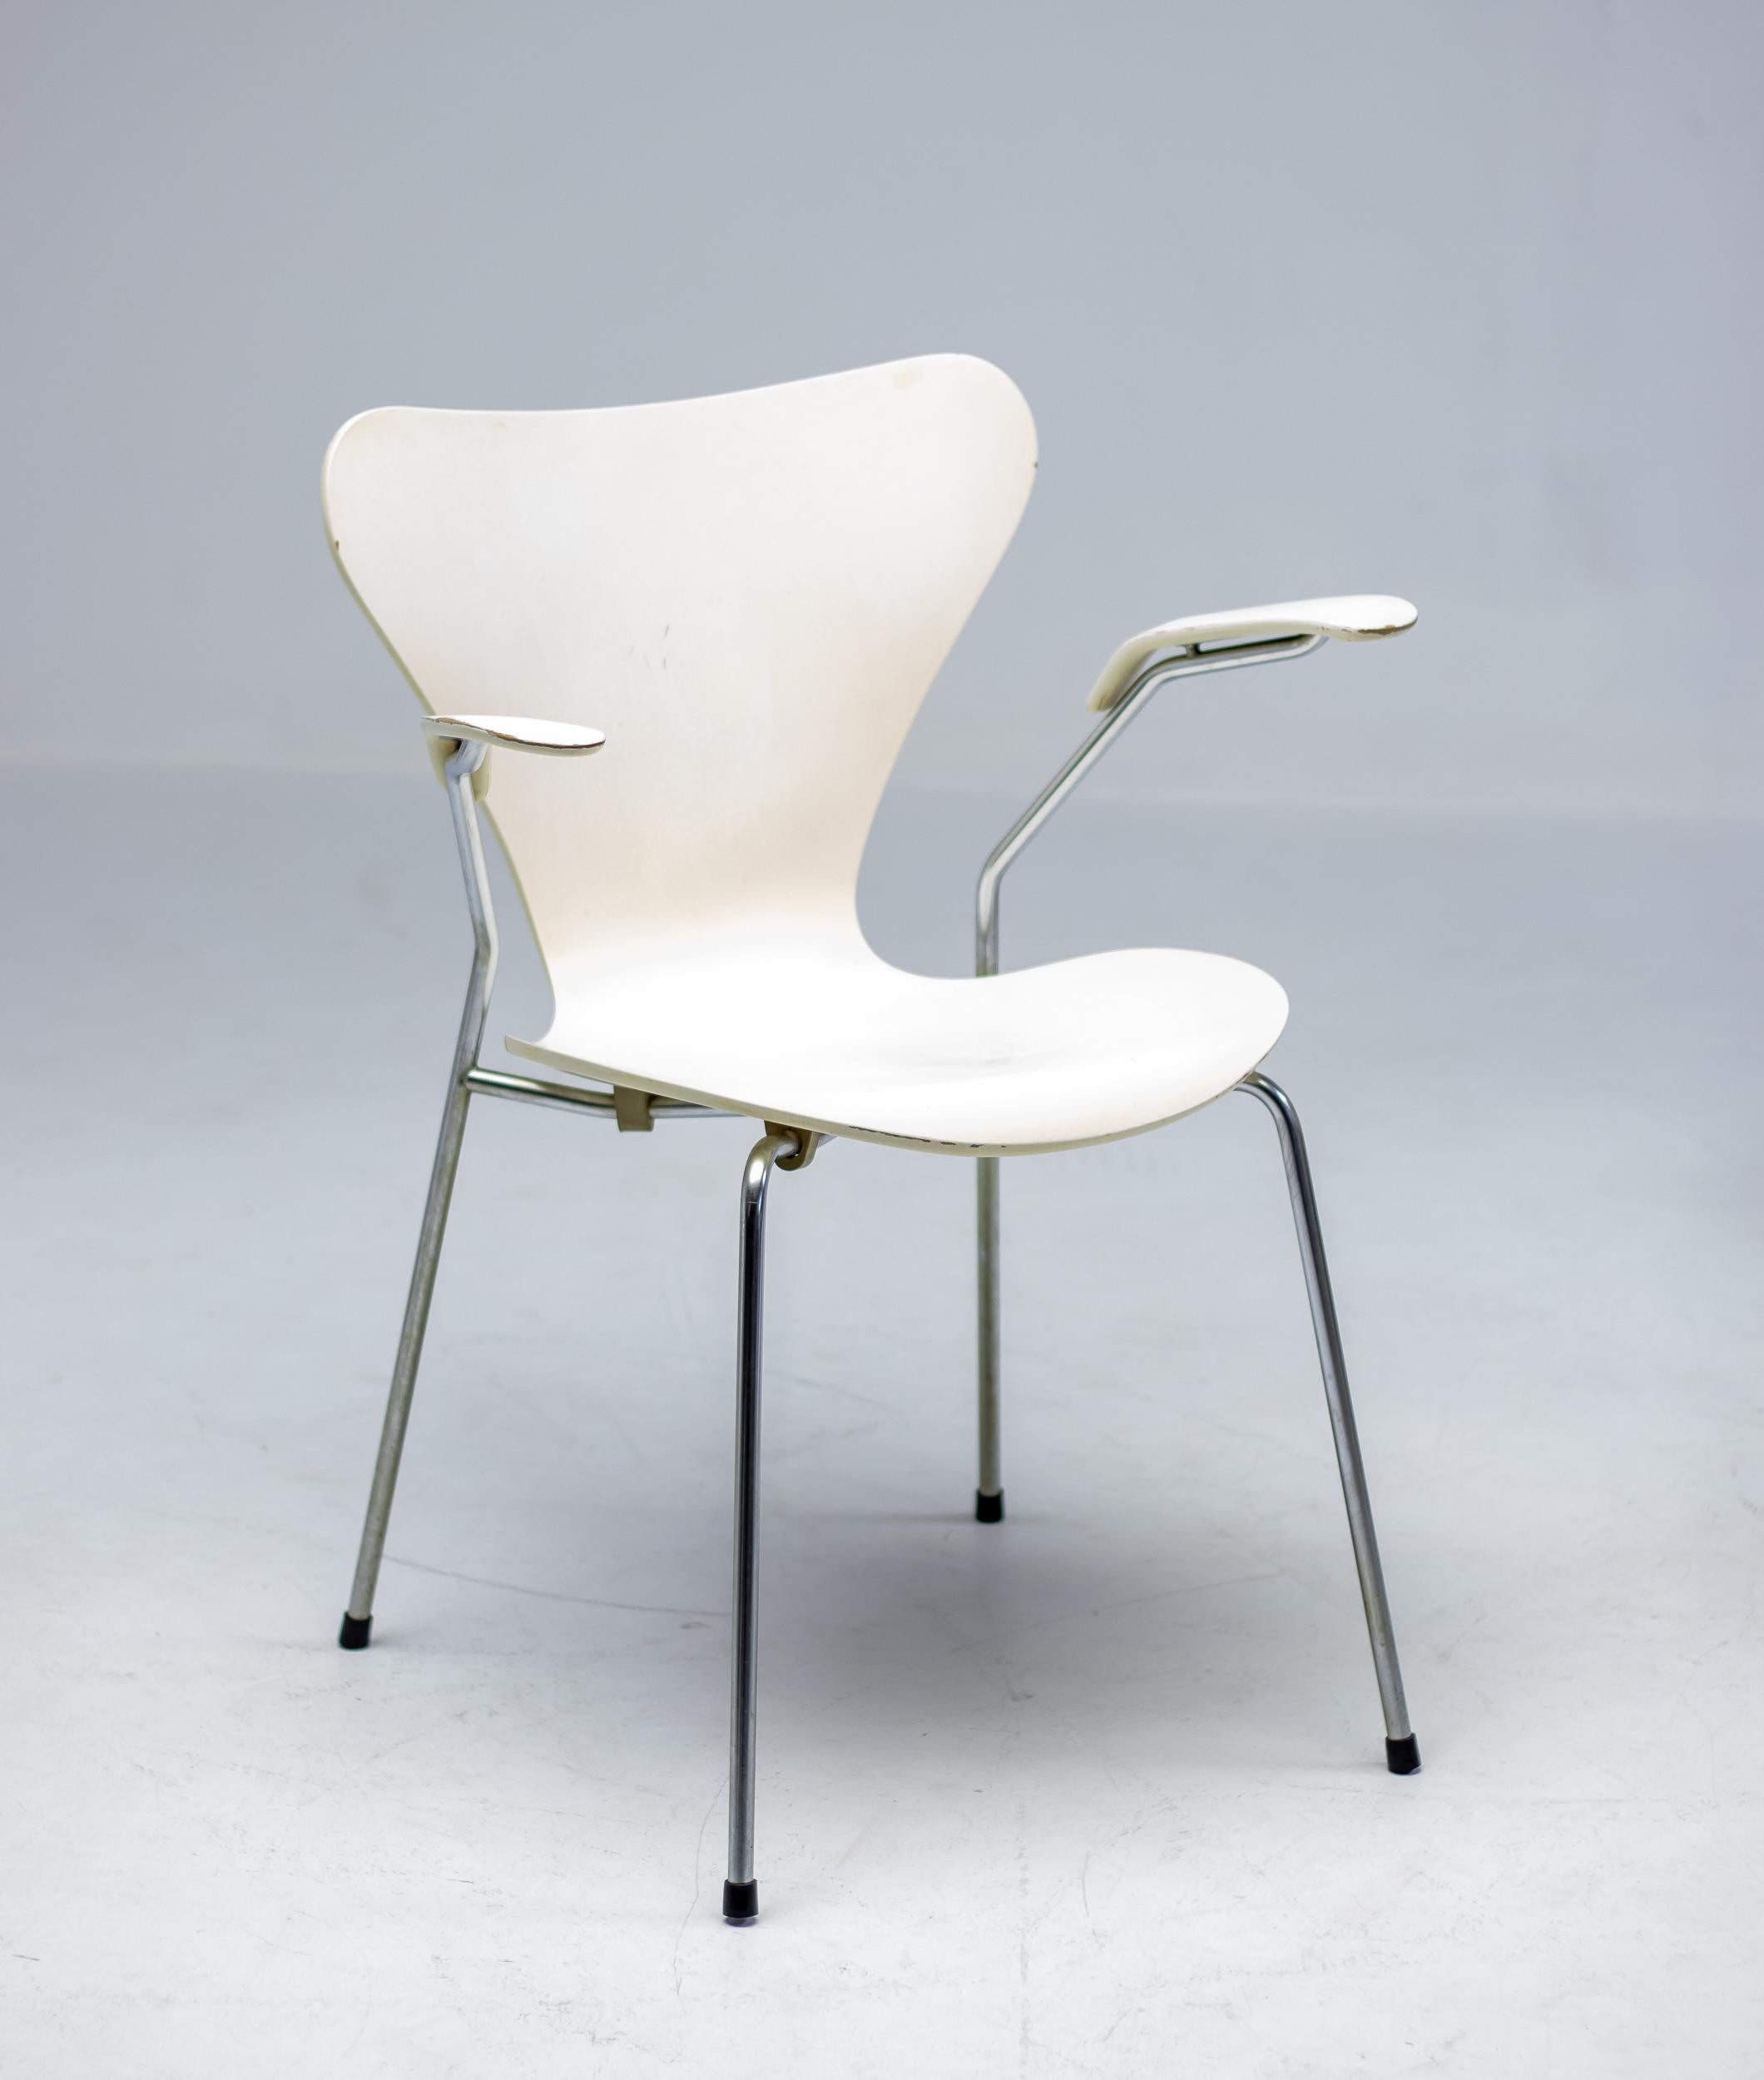 Ensemble assorti de 6 chaises à bras modèle 3207 et de 2 chaises d'appoint modèle 3107 conçu par Arne Jacobsen, produit par Fritz Hansen au Danemark en 1973. La laque de couleur crème présente une certaine usure, comme on peut s'y attendre d'un